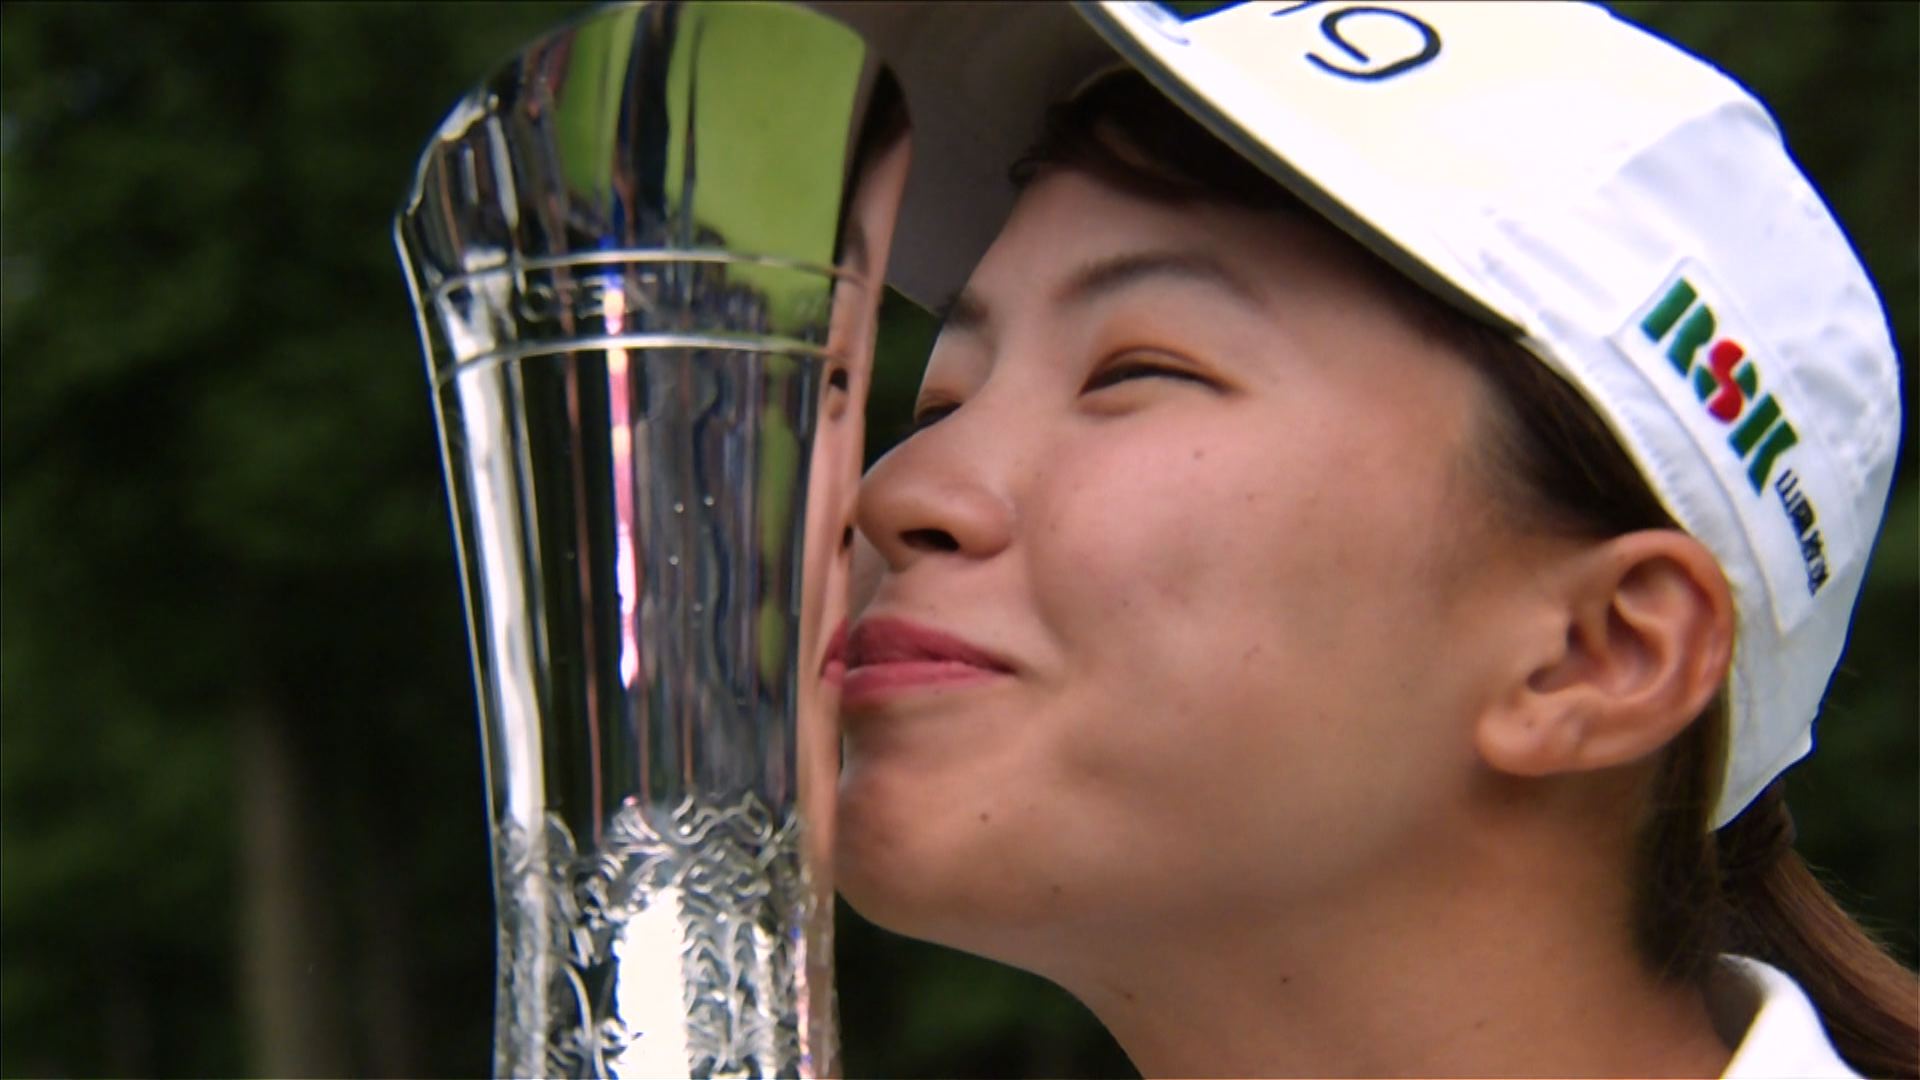 過去の日本人選手の成績 第44回全英女子オープンゴルフ テレビ朝日